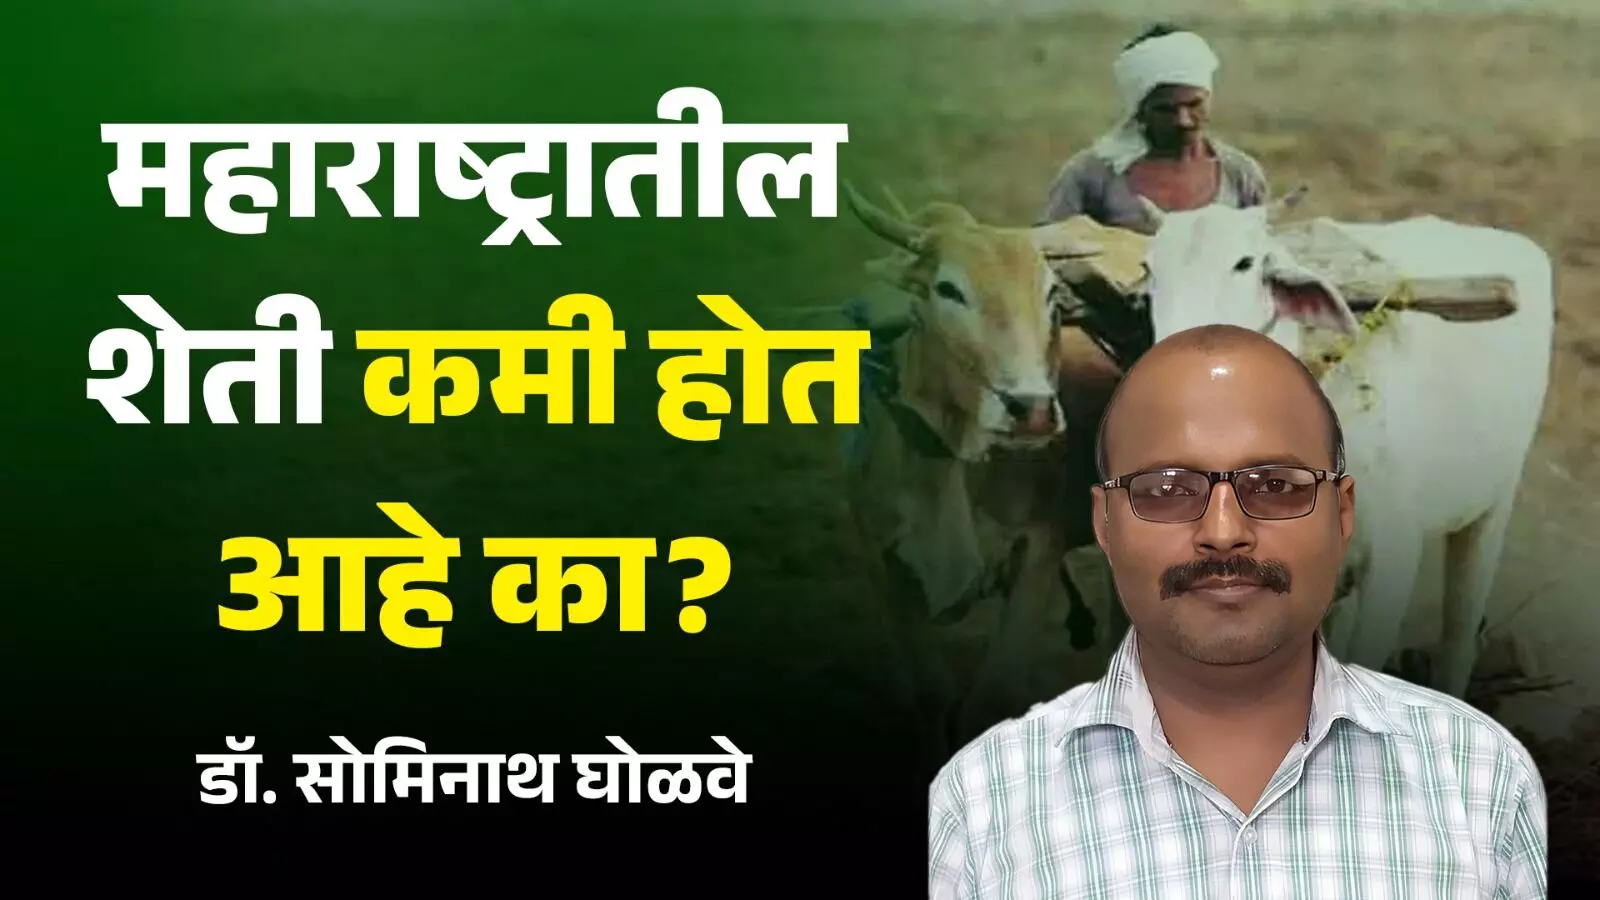 महाराष्ट्राची शेती कमी होत आहे का?